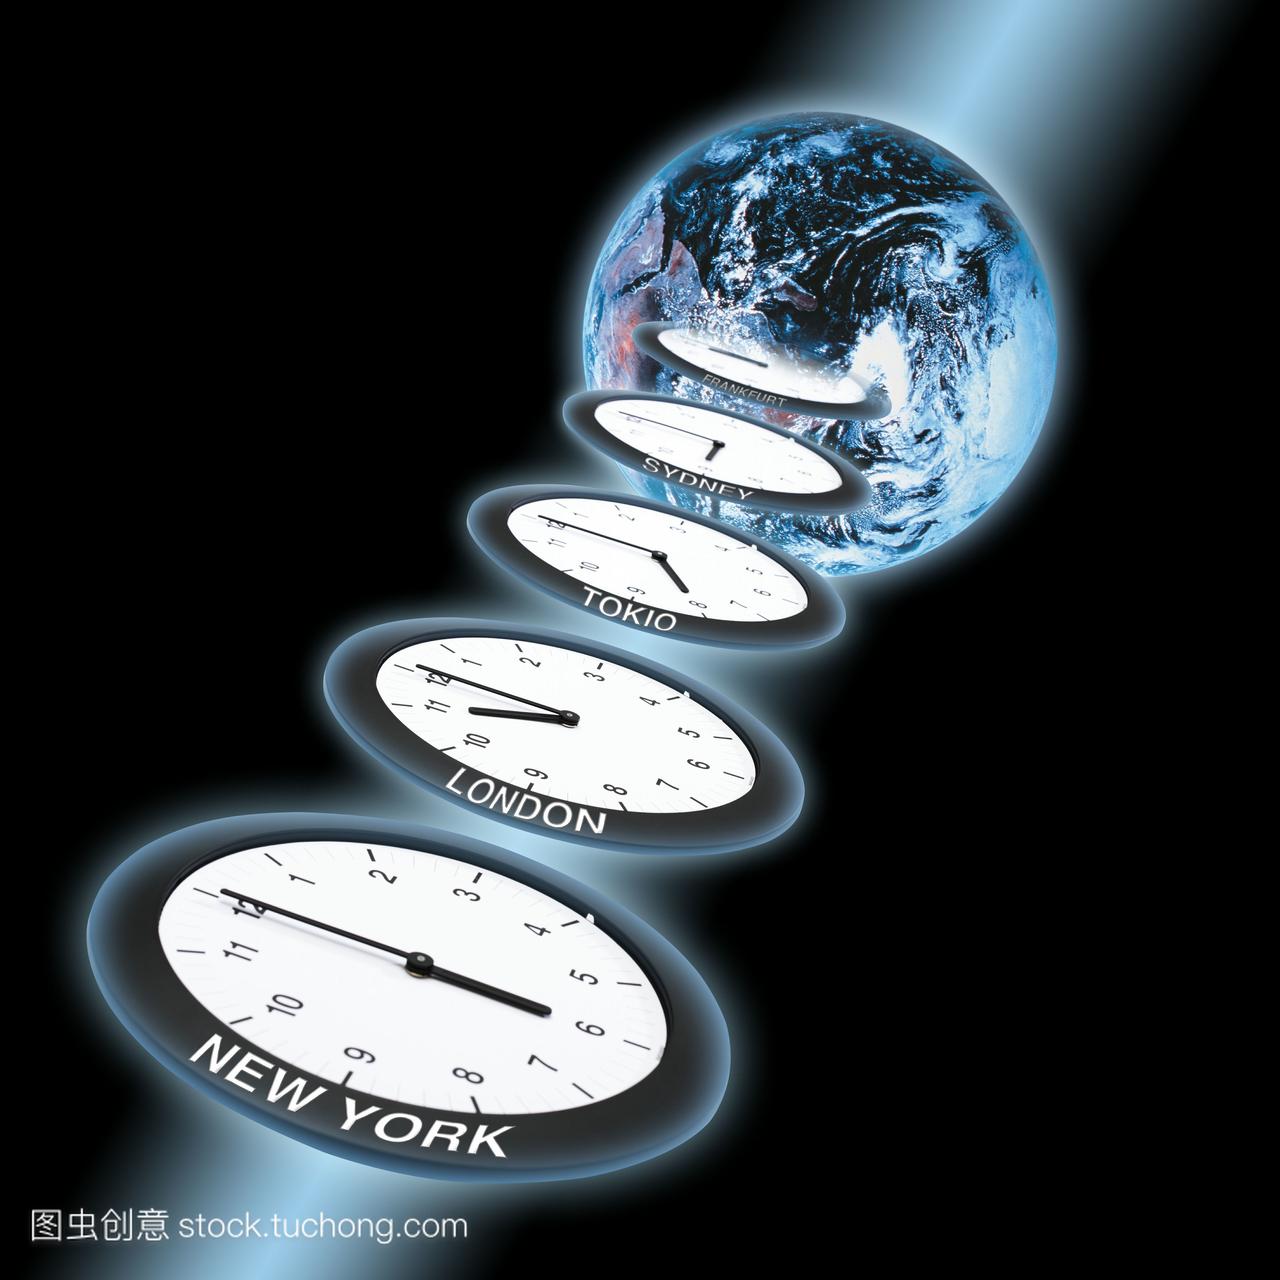 地球仪和时钟,代表格林威治标准时间